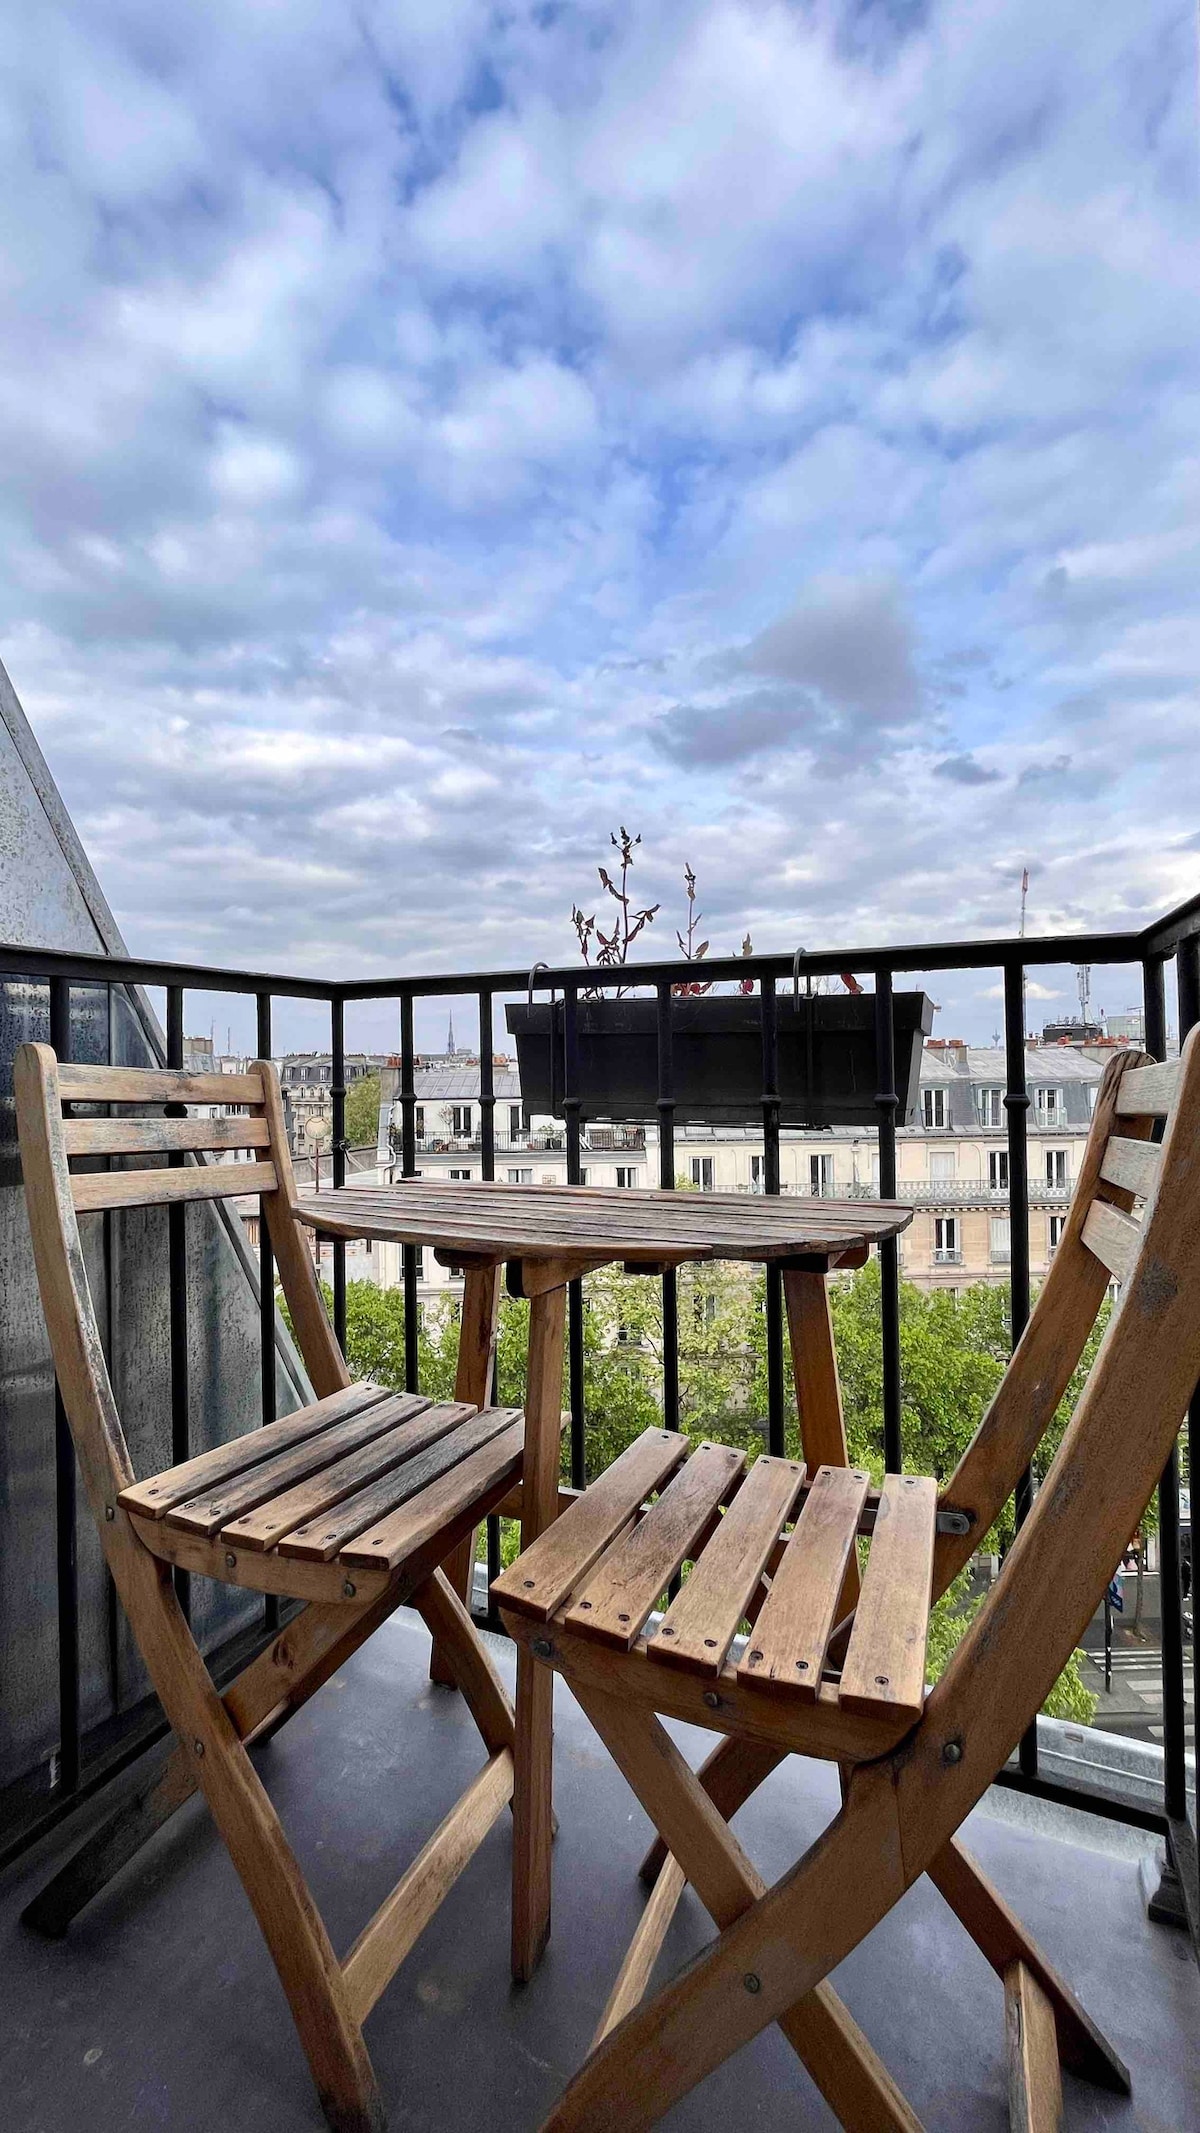 Appartement Élégant avec Vue Panoramique sur Paris